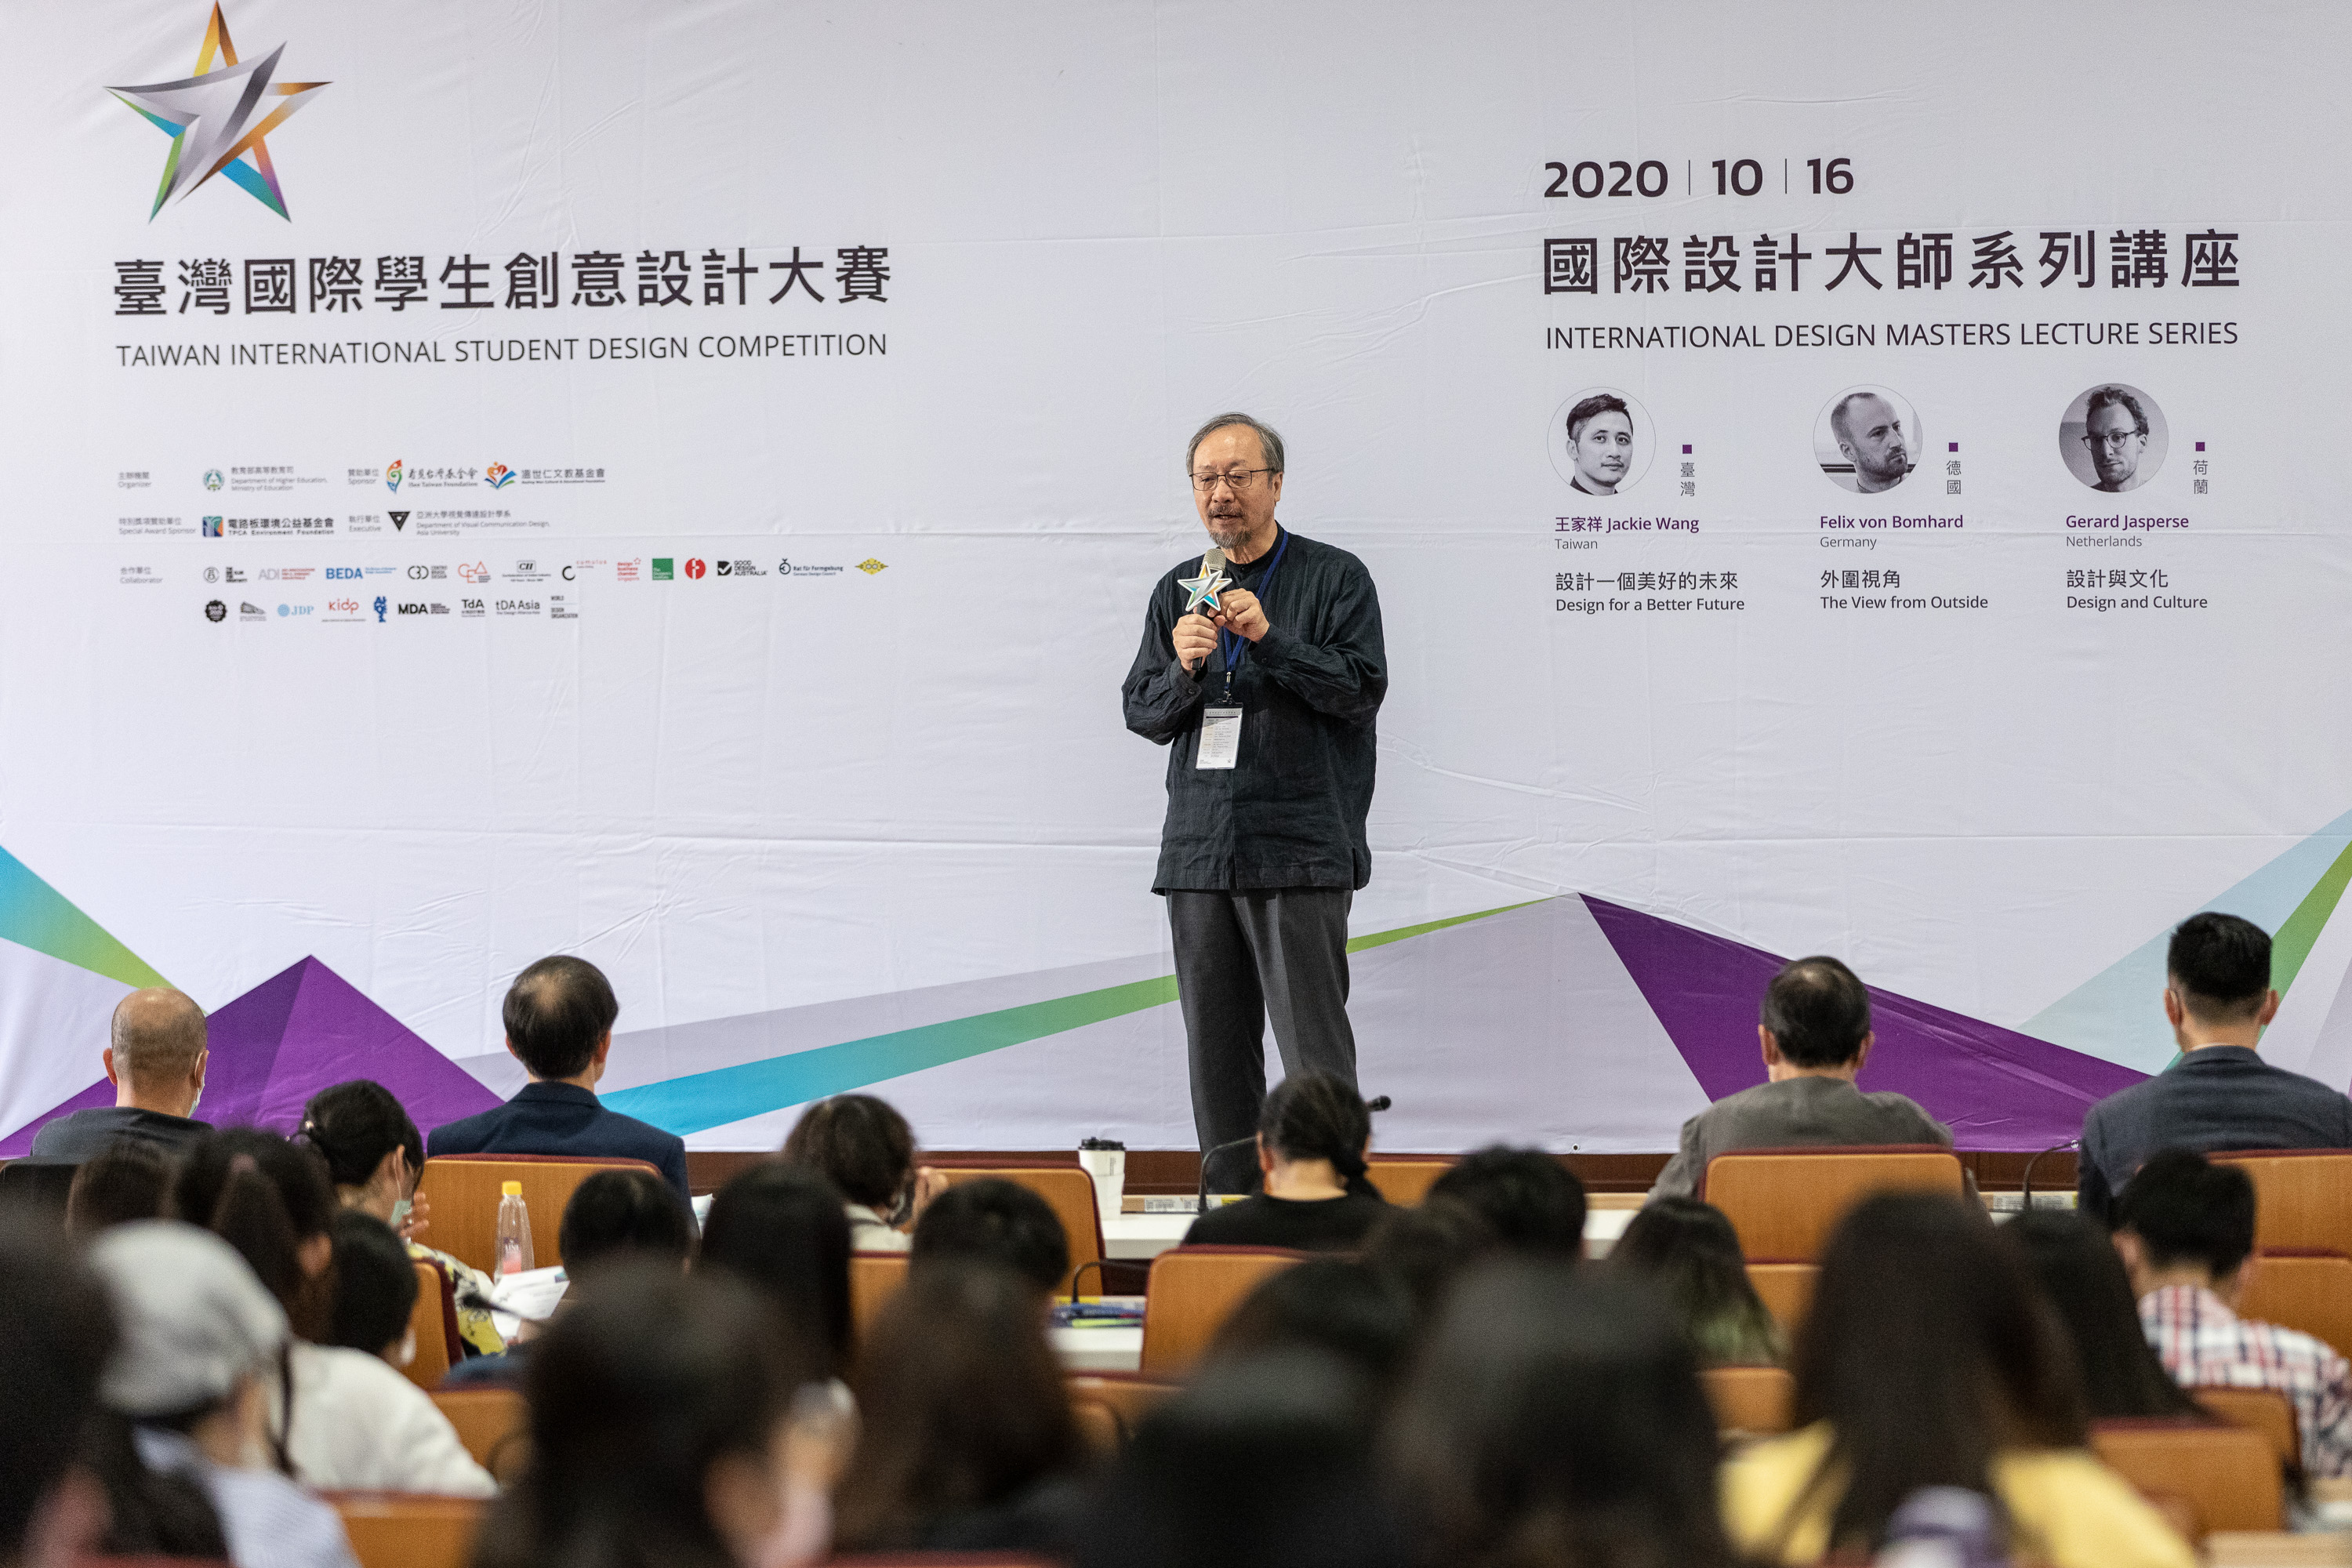 臺灣國際學生創意設計大賽計畫主持人、亞大視覺傳達設計學系講座教授林磐聳，於2020年國際設計大師系列講座開幕致詞。